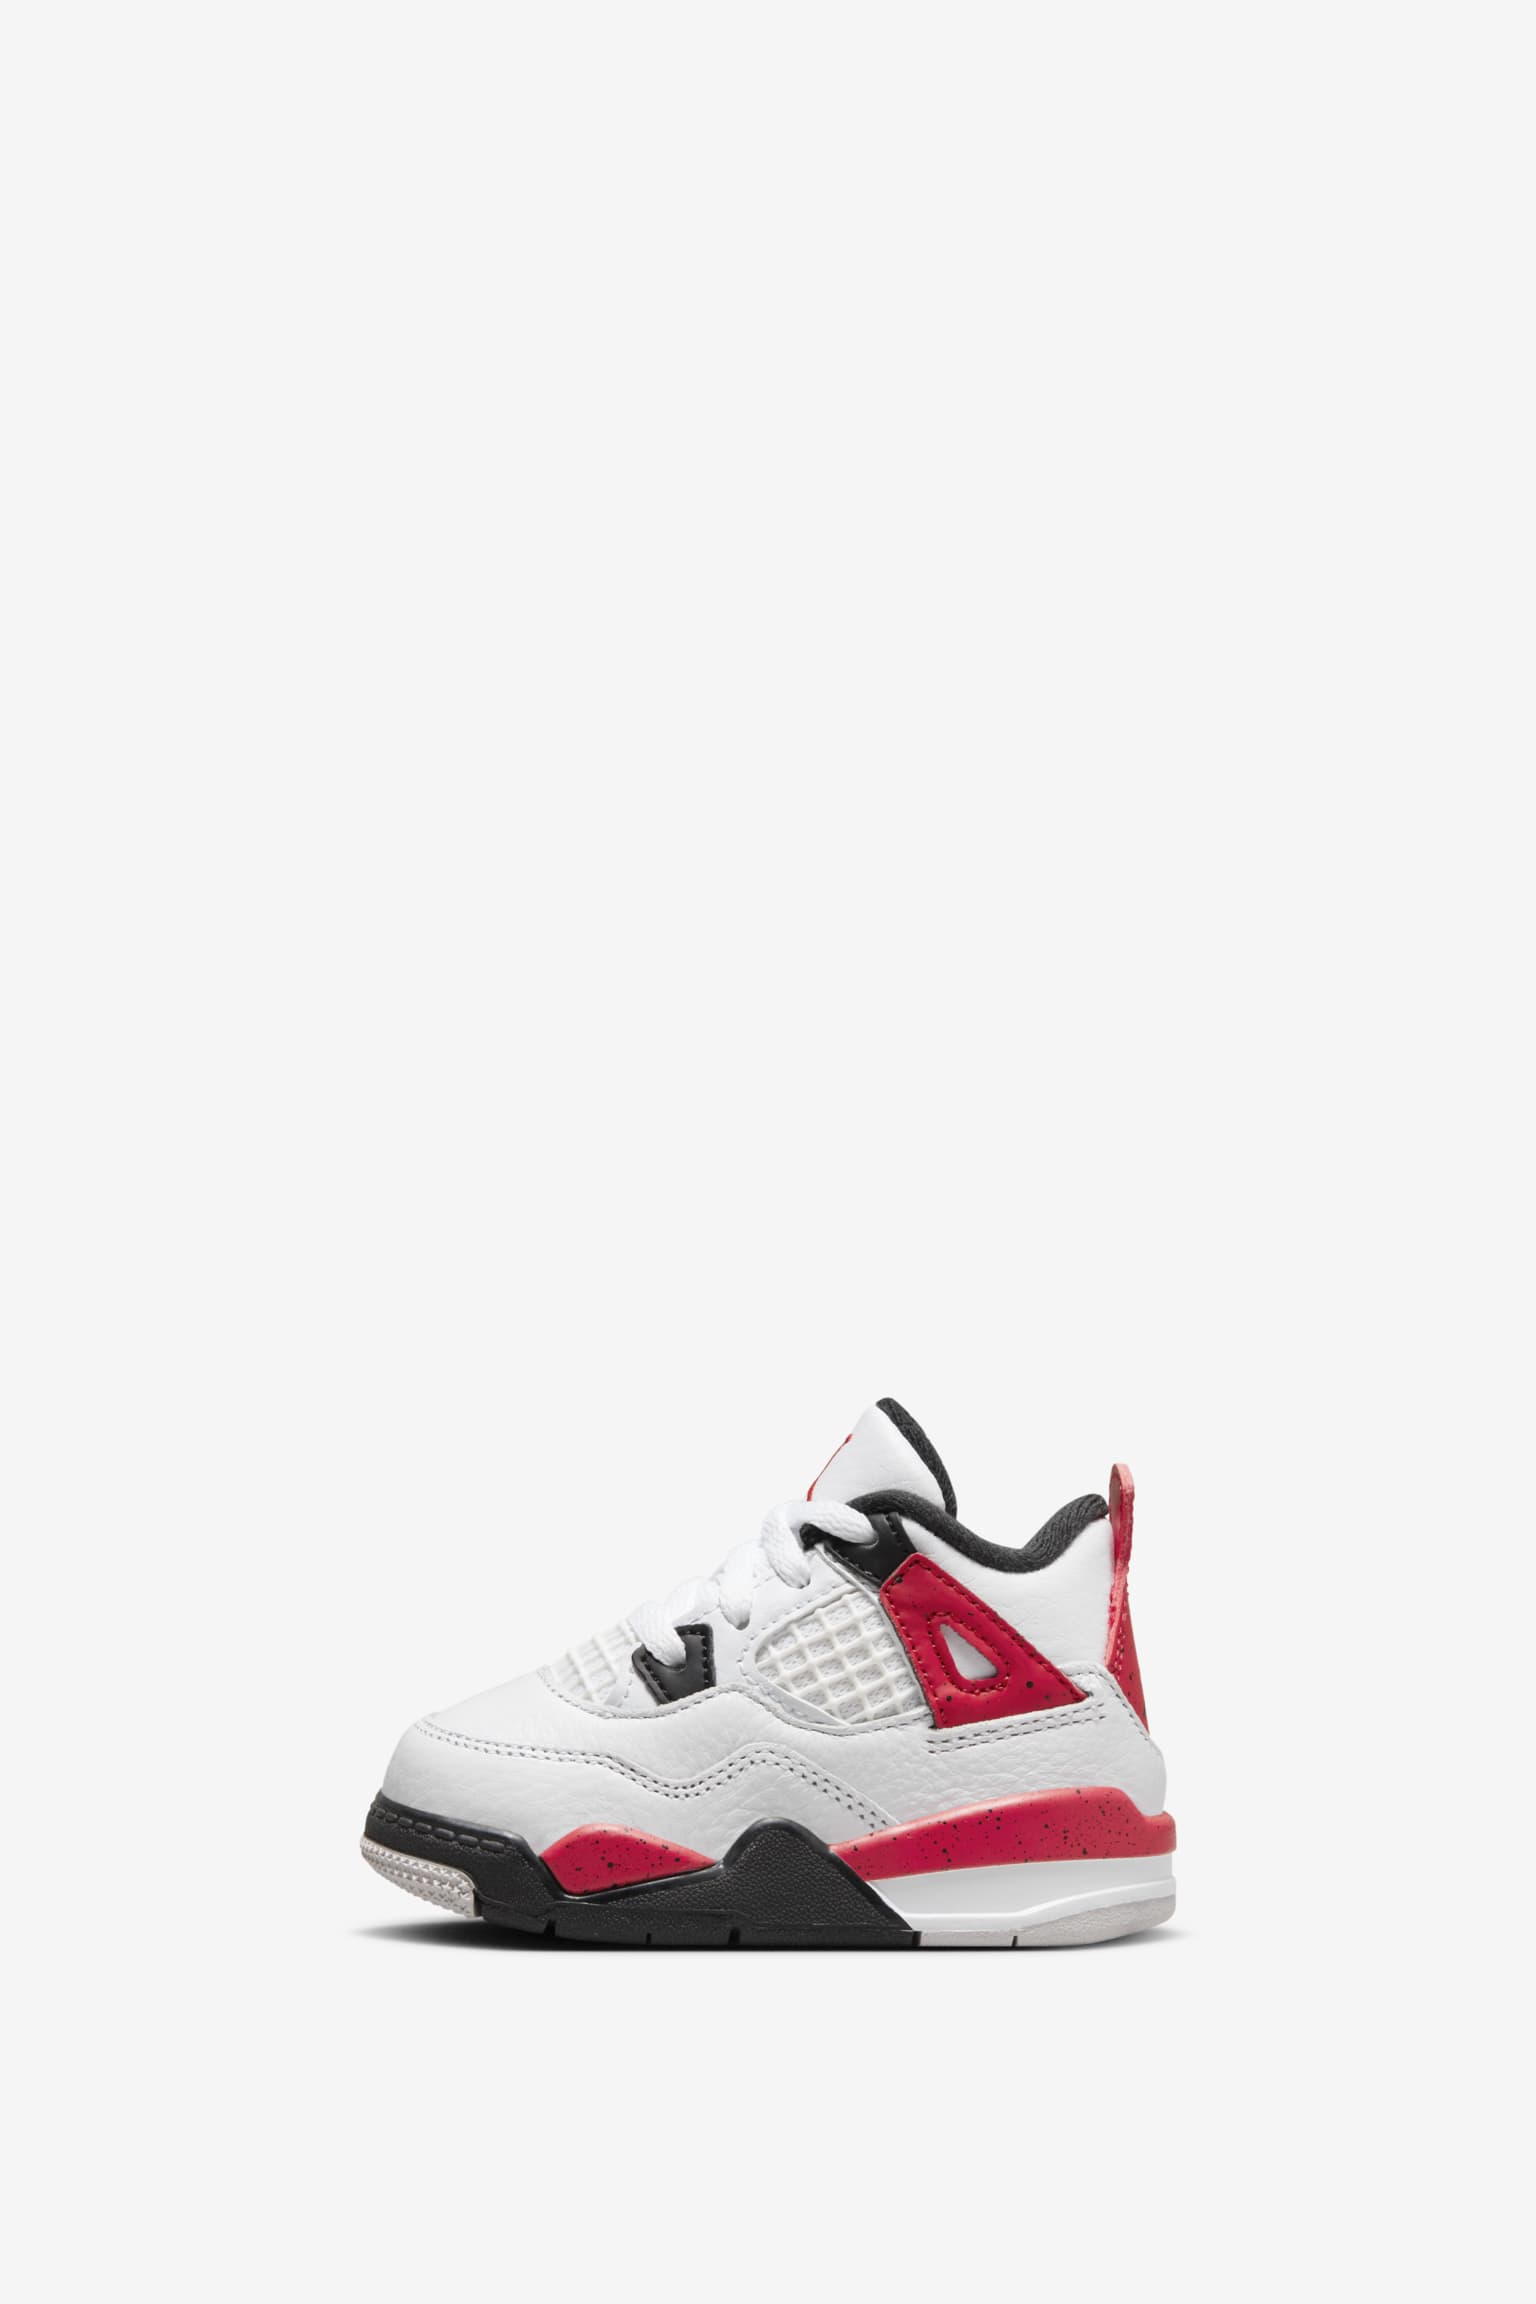 Air Jordan 4 Retro 'Red Cement' - Air Jordan - DH6927 161 - white/fire  red/black/neutral grey